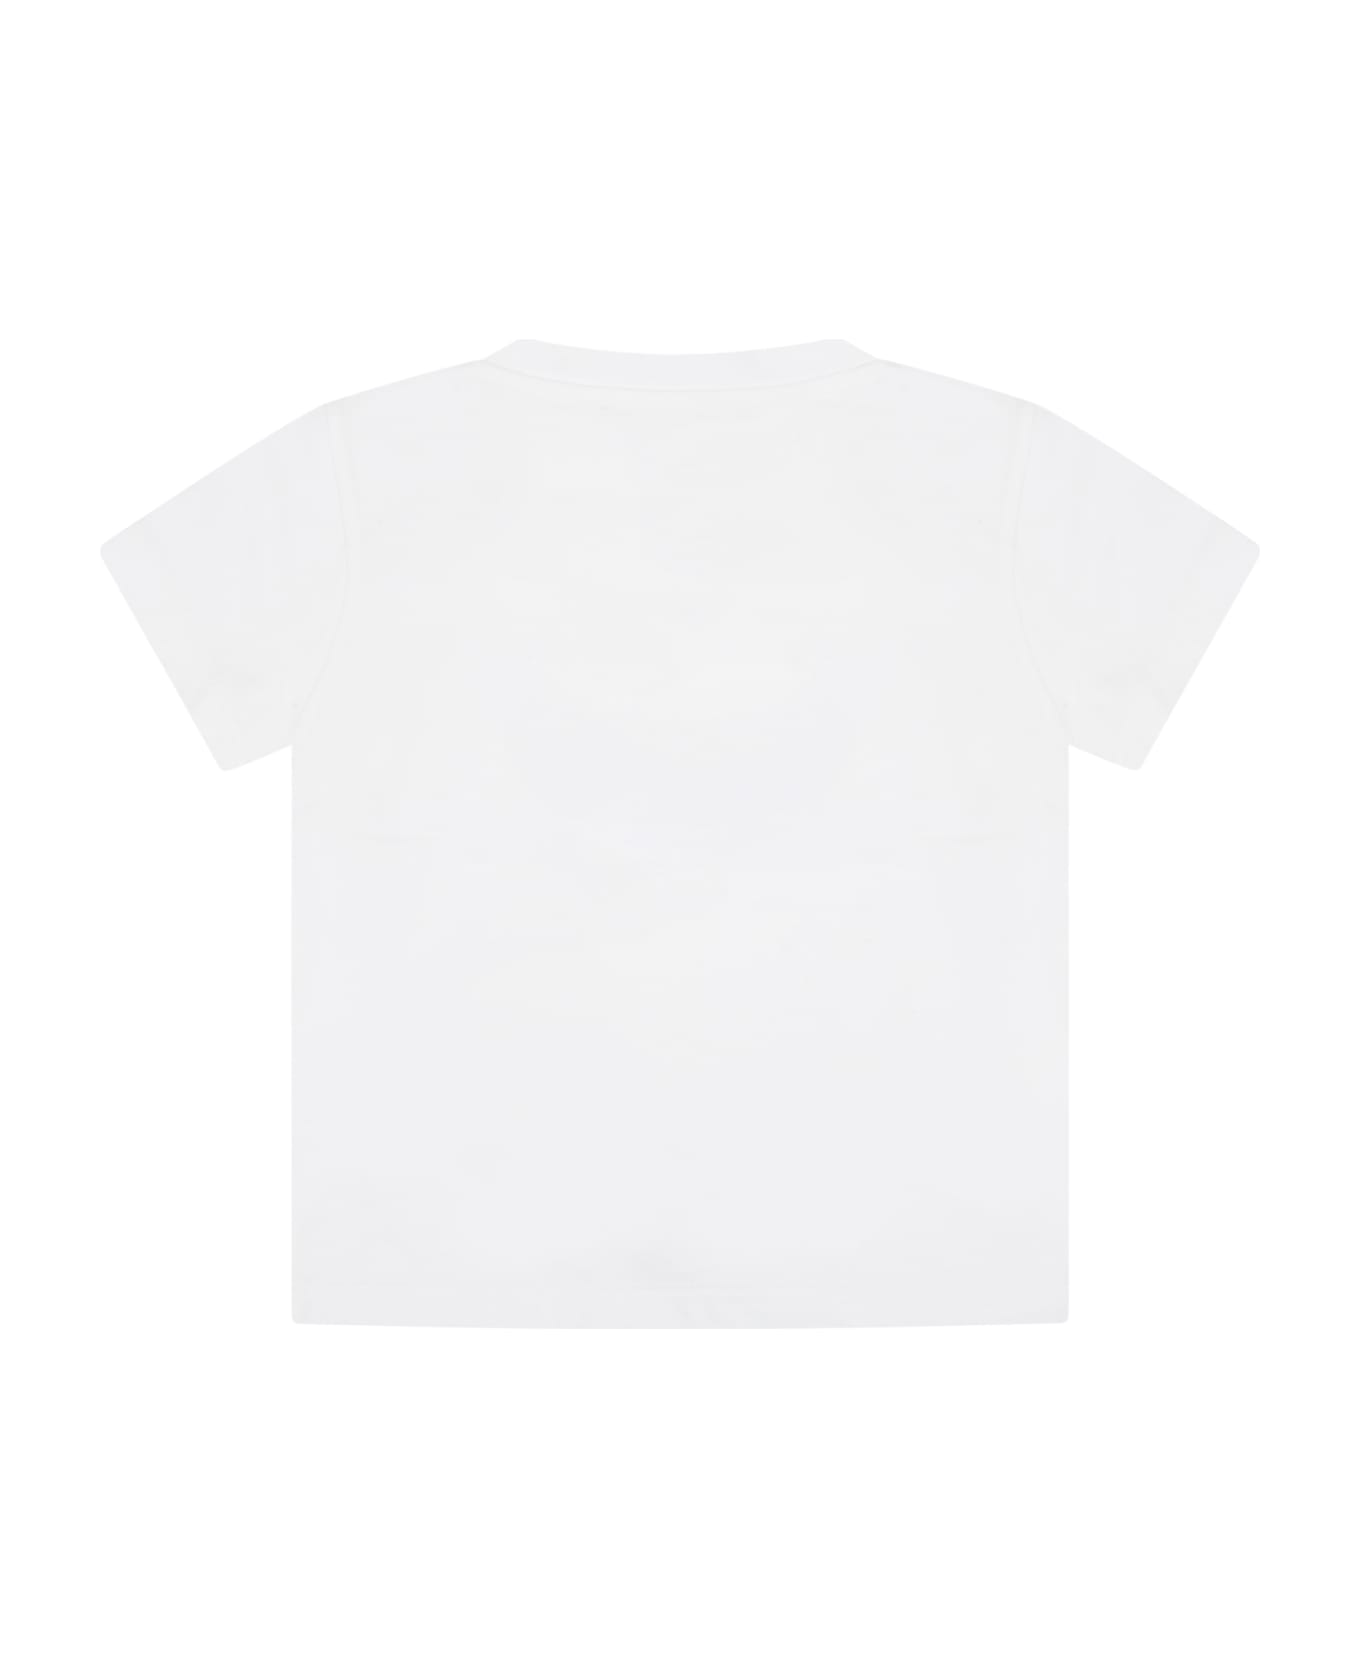 Balmain White T-shirt For Baby Boy With Logos - White